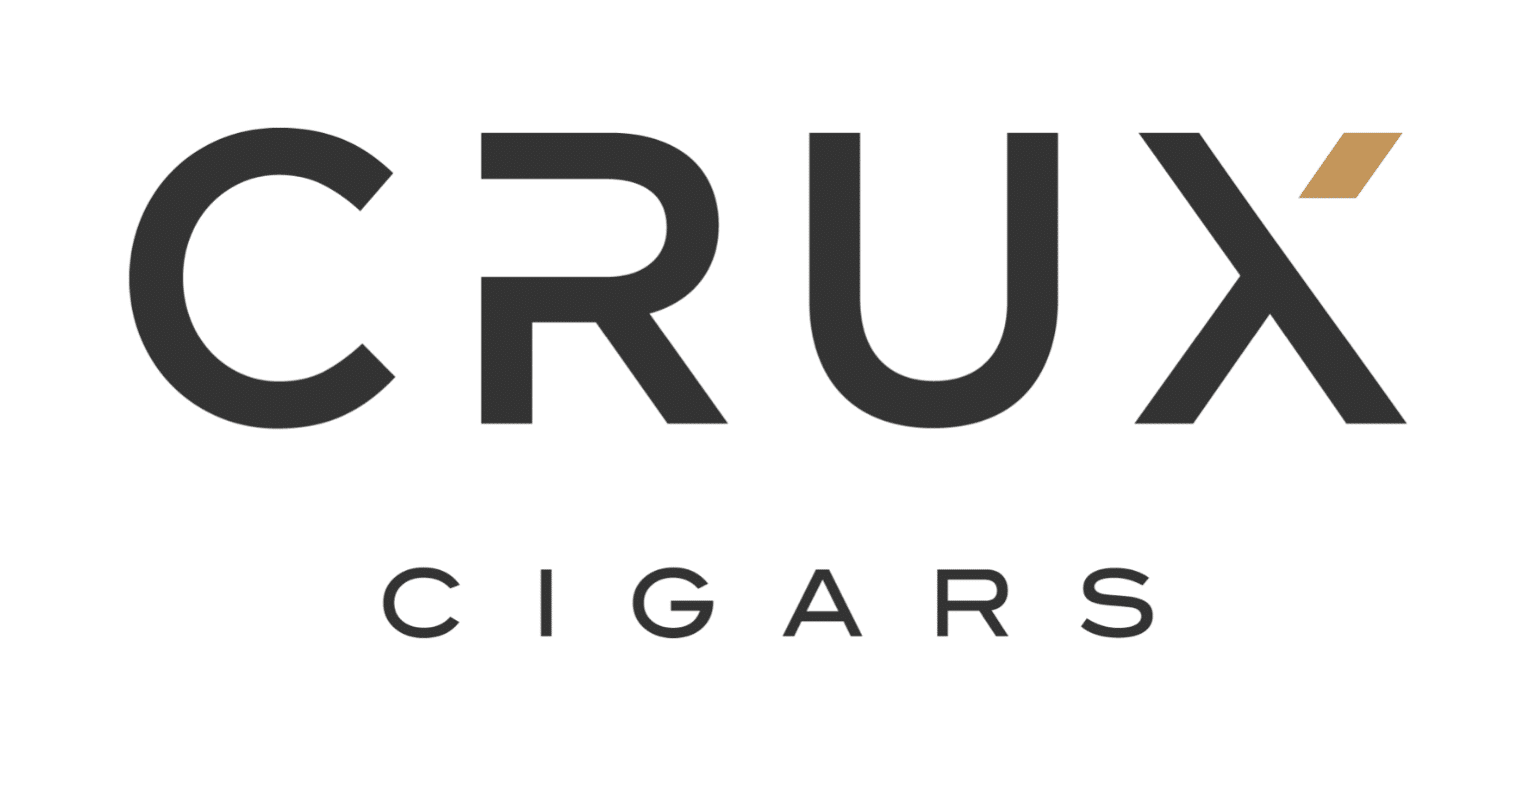 Cigar News: Crux Hires Tony Haugen as Direct Sales Excecutive